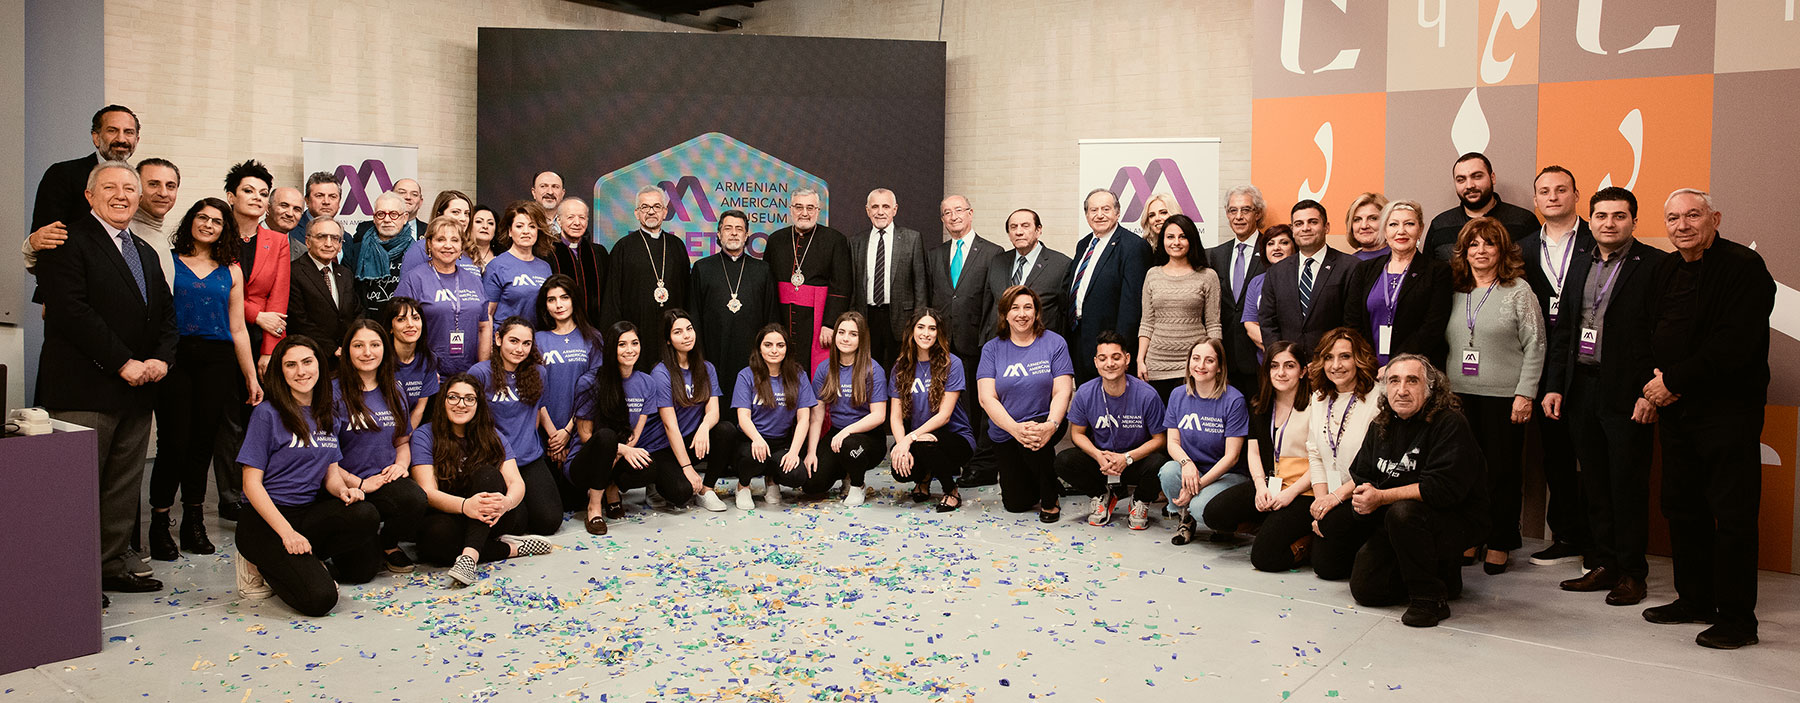 Armenian American Museum Leadership with Telethon Committee Members, Volunteers & Crew